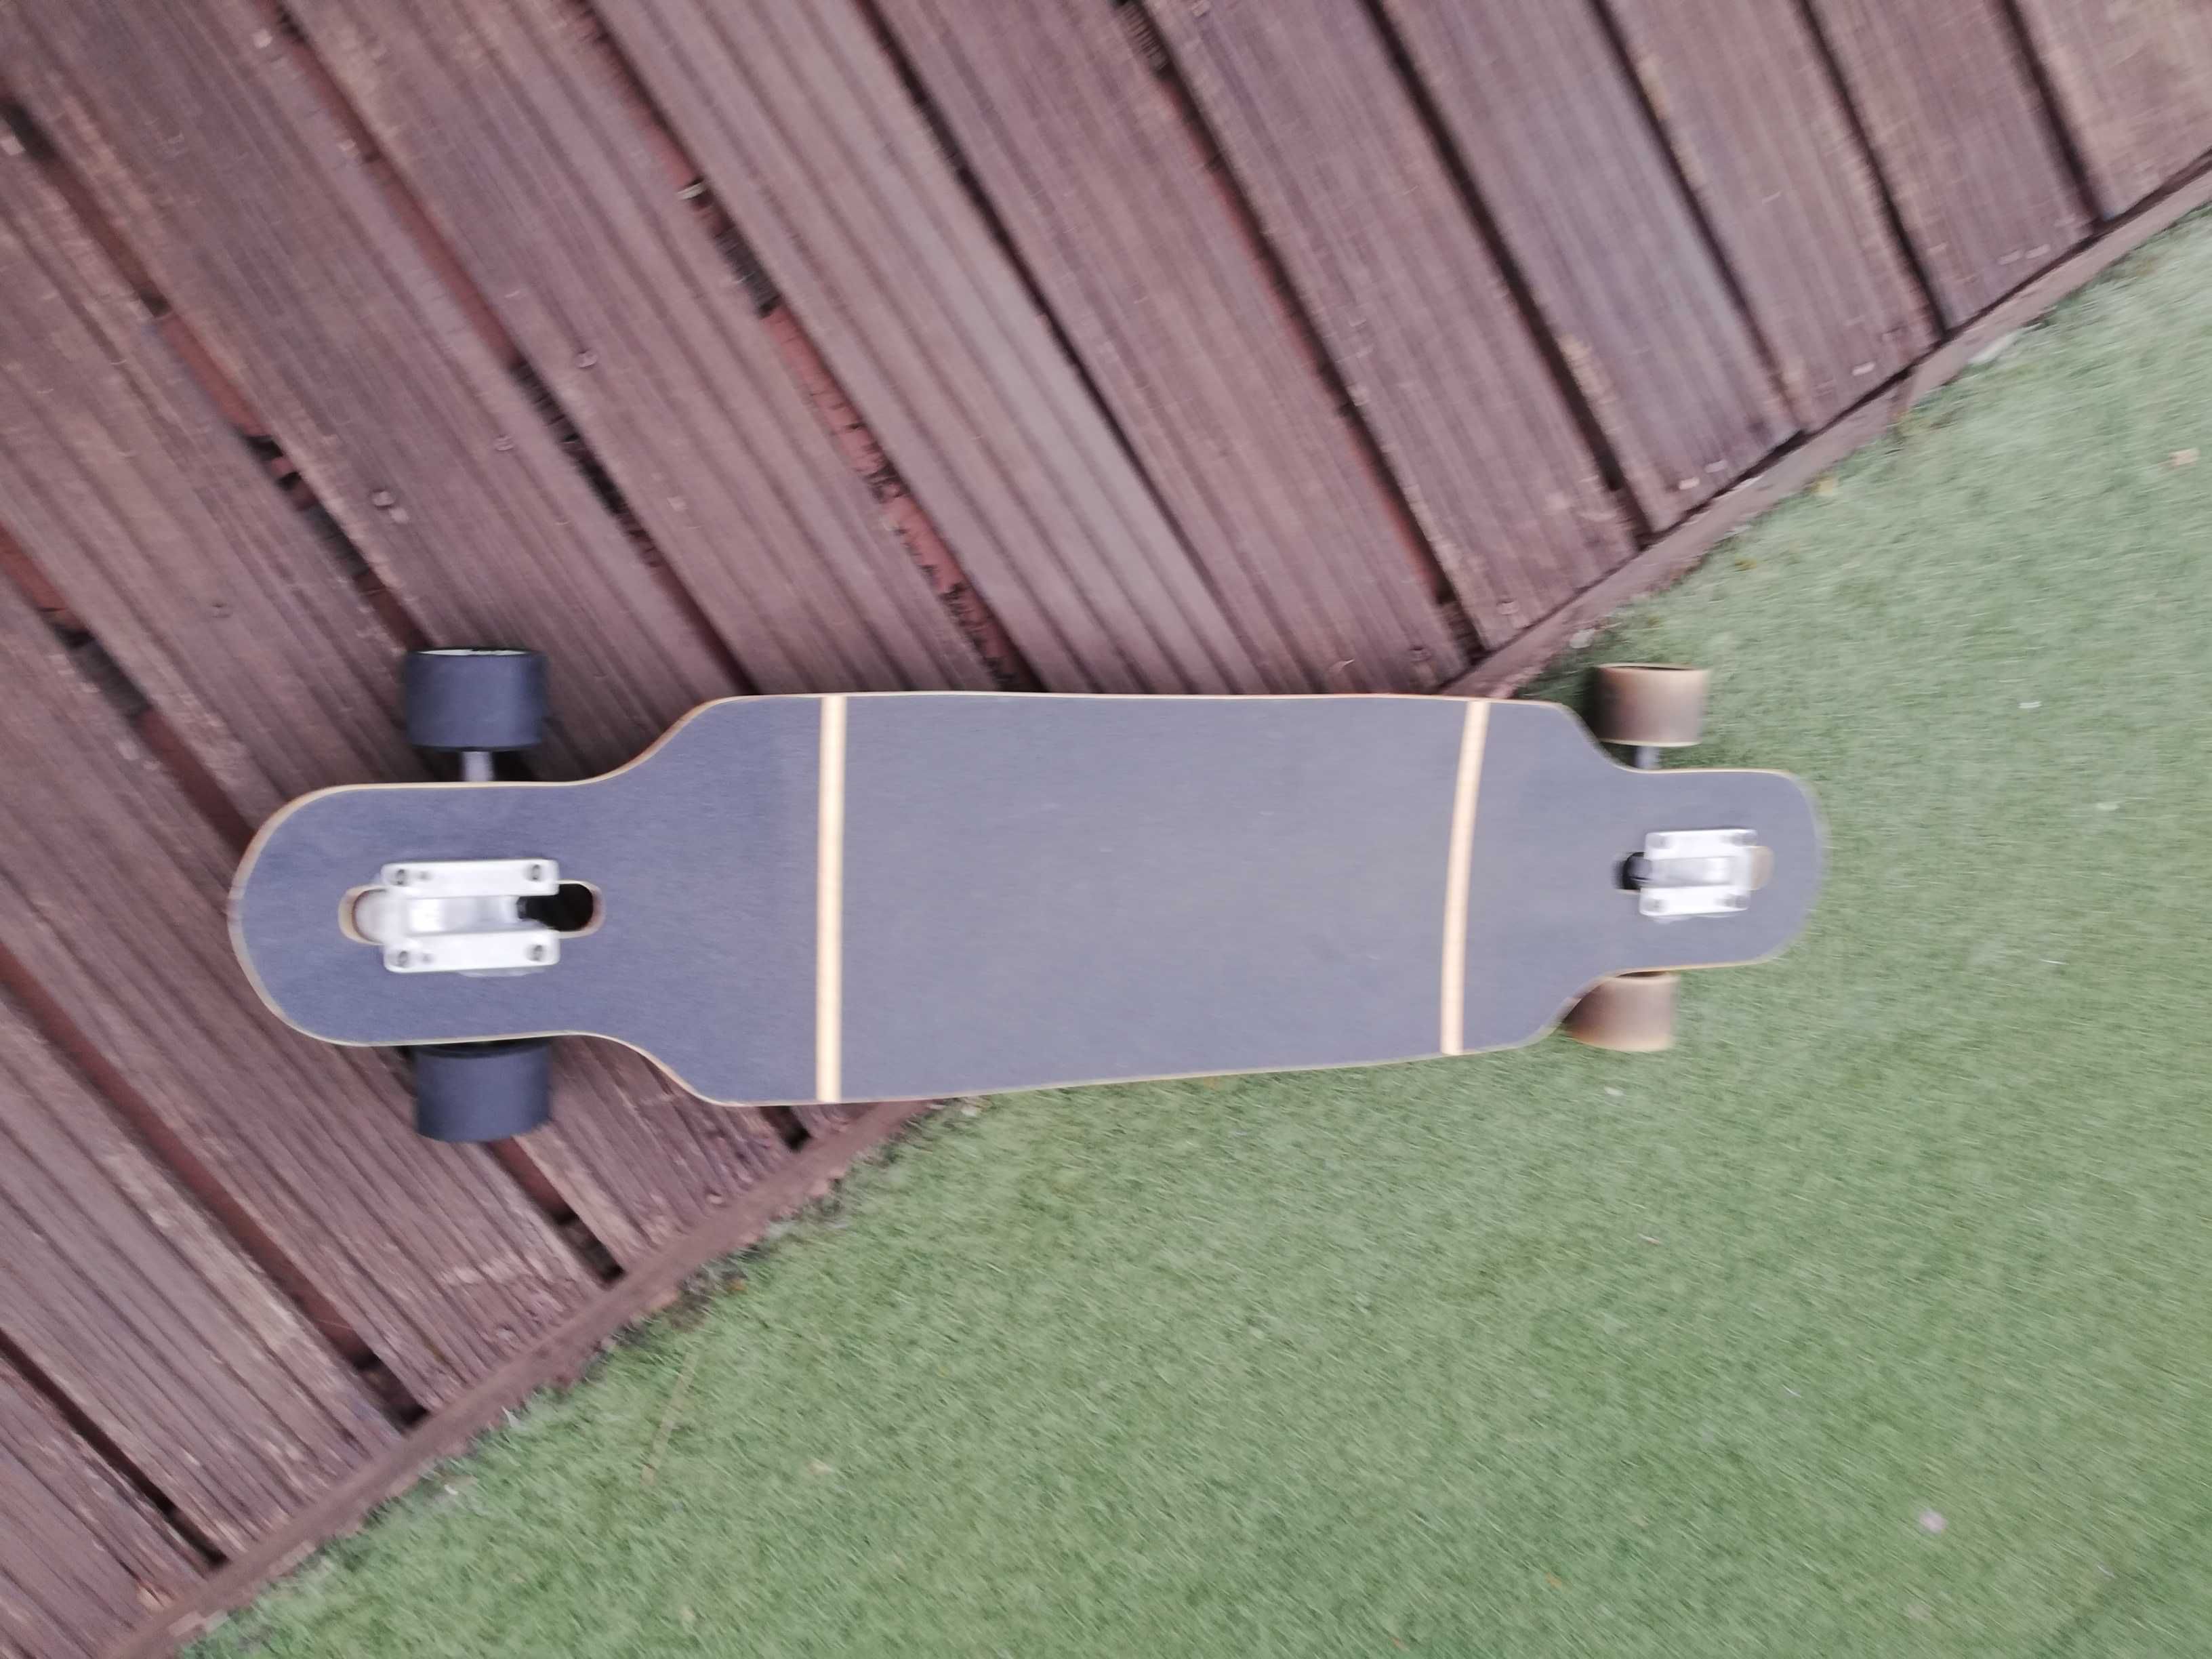 Skate longboard Oxelo